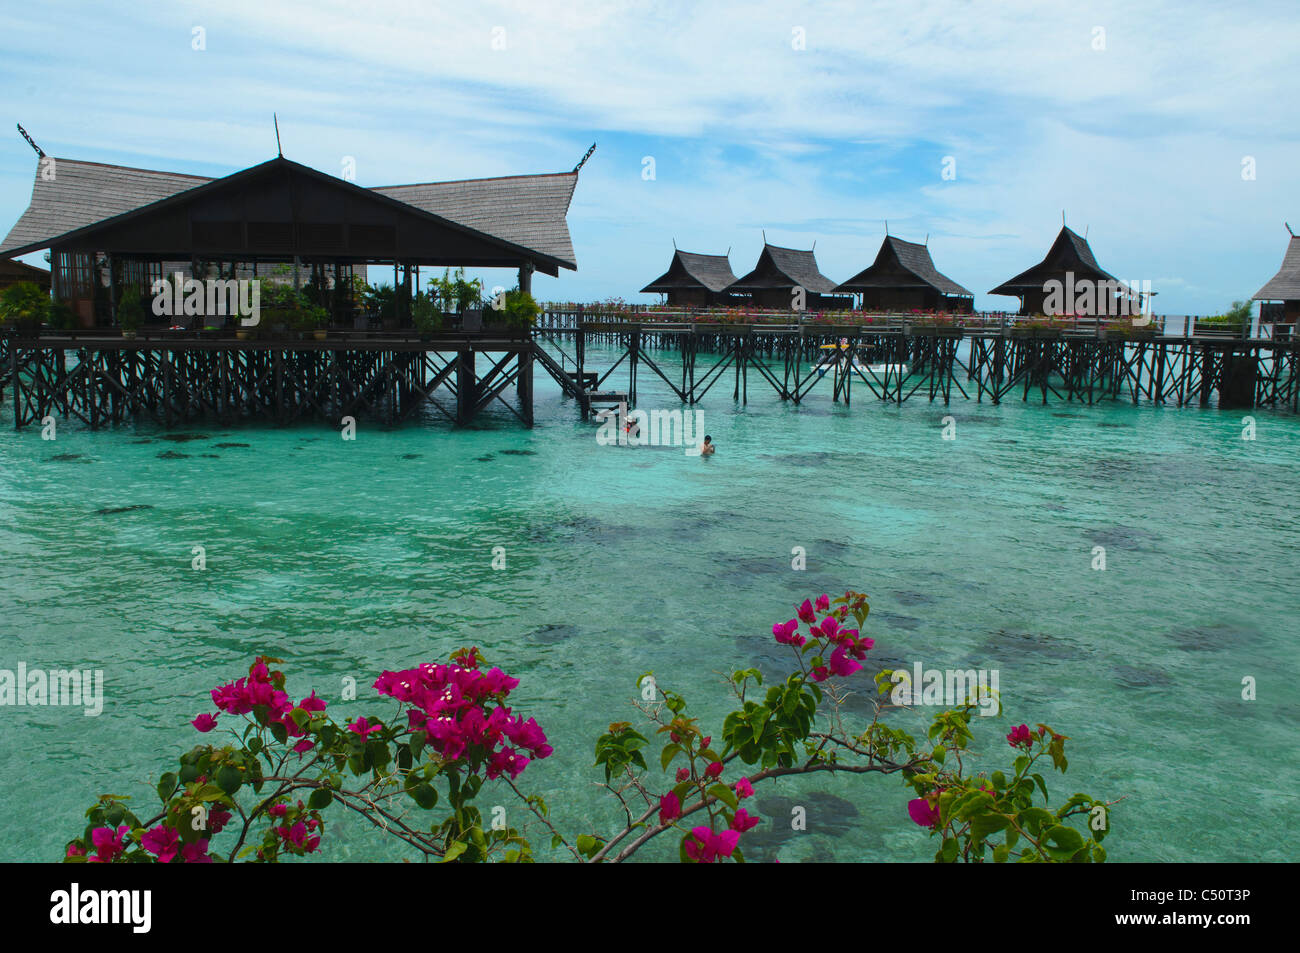 La magnifique Kapalai Water Resort près de l'île de Sipadan, Bornéo, Malaisie Banque D'Images